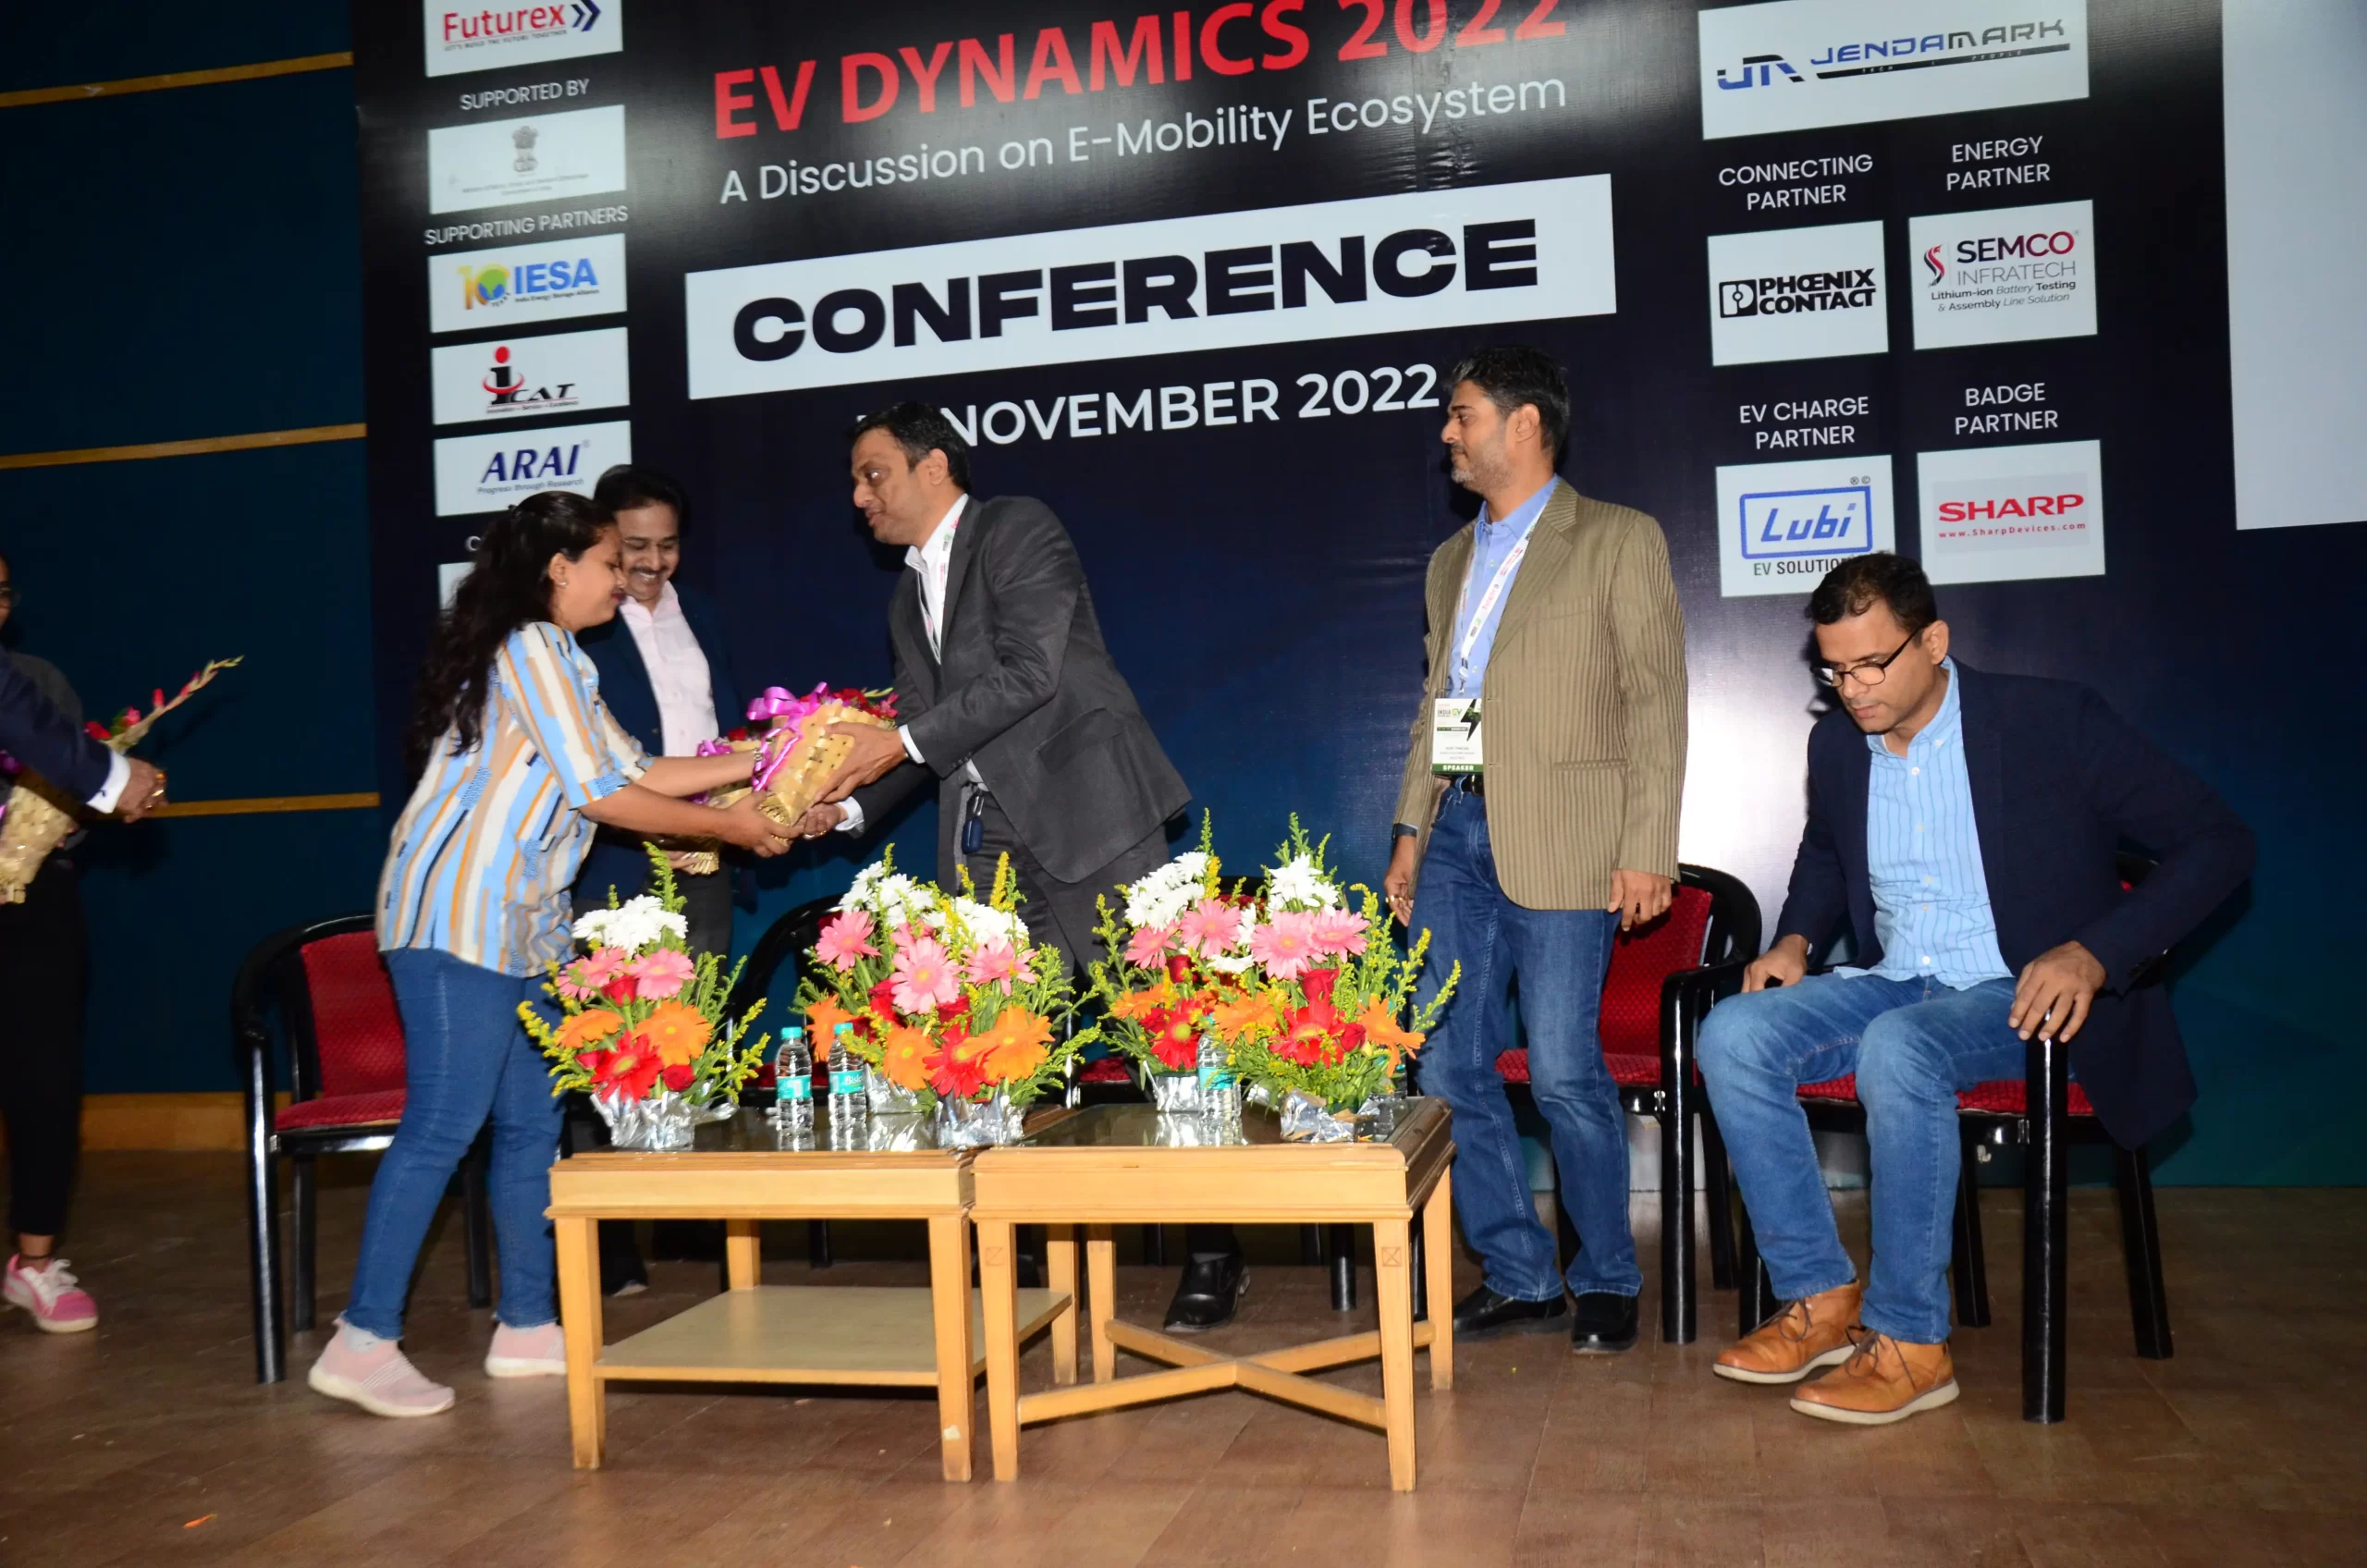 ev dyanmics conference (2)